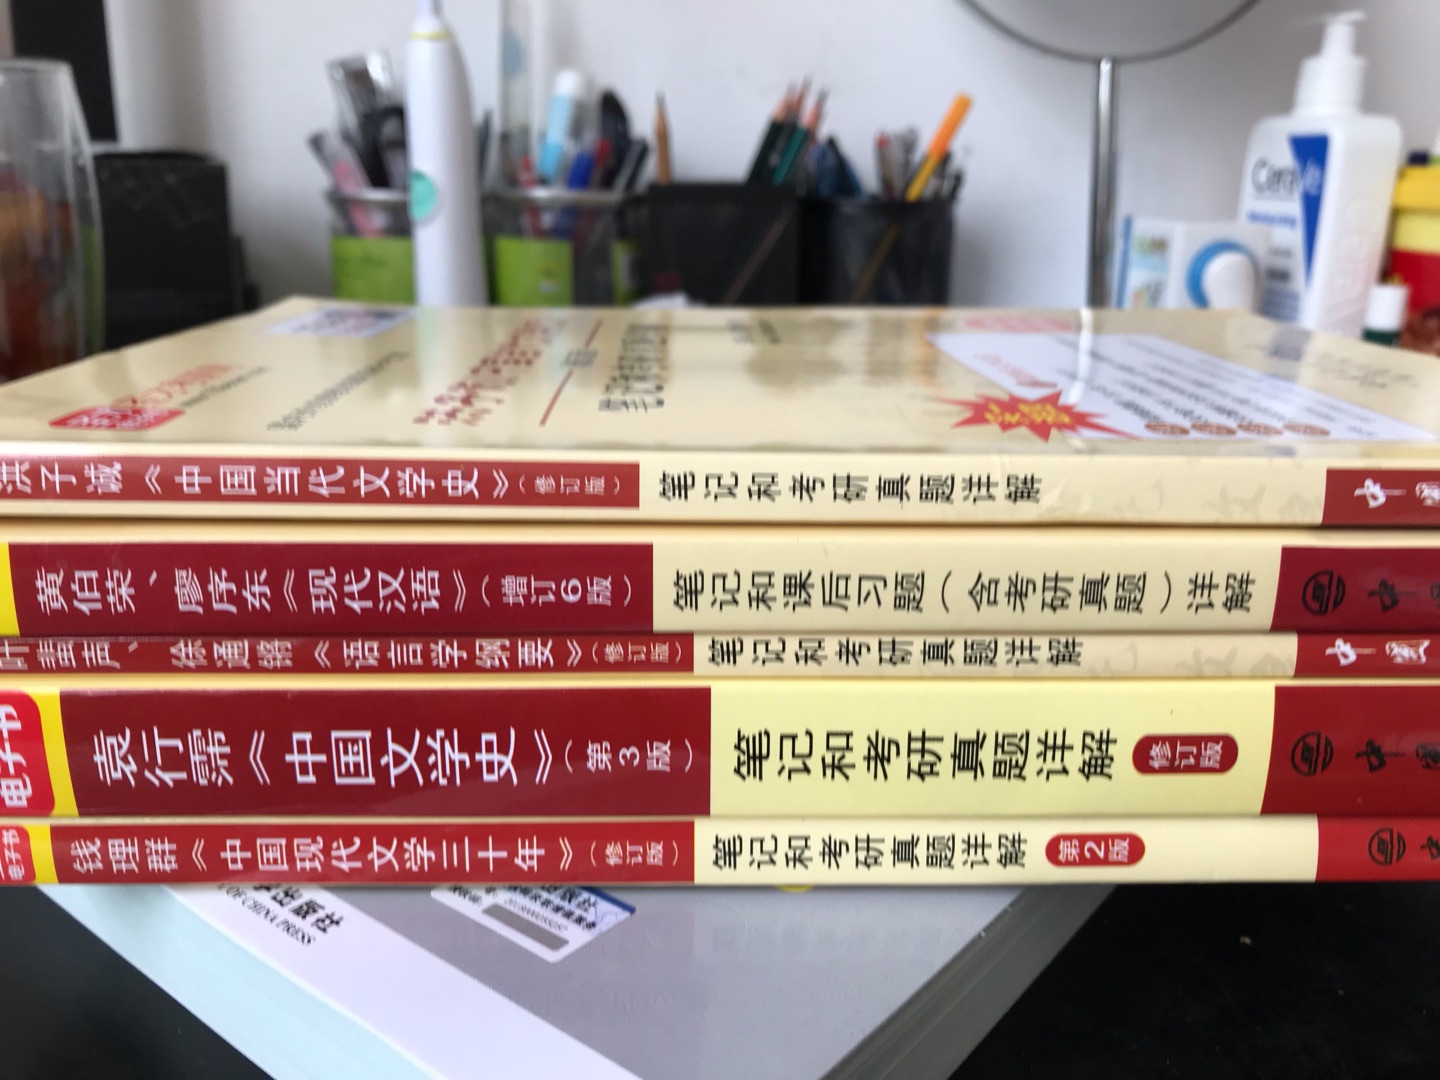 本书是普通高等教育“九五”***重点教材、“十一五”国家级规划教材《中国现代文学三十年》（钱理群著，北京大学出版社）的学习辅导书。钱理群主编的《中国现代文学三十年》是我国高校广泛采用的现代文学经典教材之一，也被众多高校（包括科研机构）指定为“现代文学”考研考博专业课参考书目